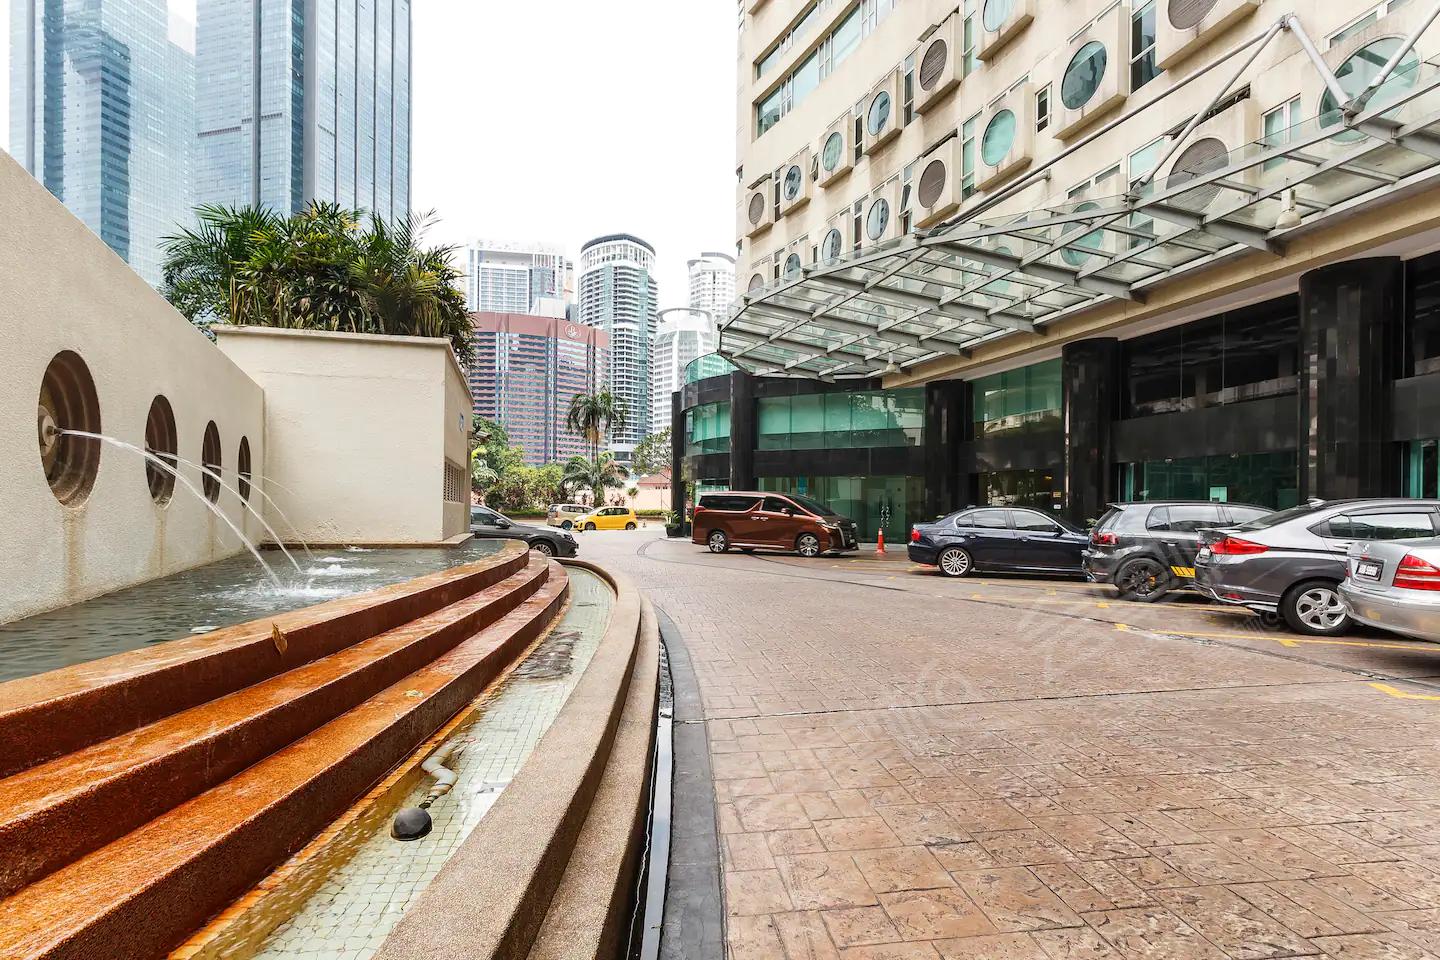 吉隆坡四星级酒店最大容纳200人的会议场地|吉隆坡KLCC园景套房公寓(Parkview Suites at Kuala Lumpur City Centre)的价格与联系方式